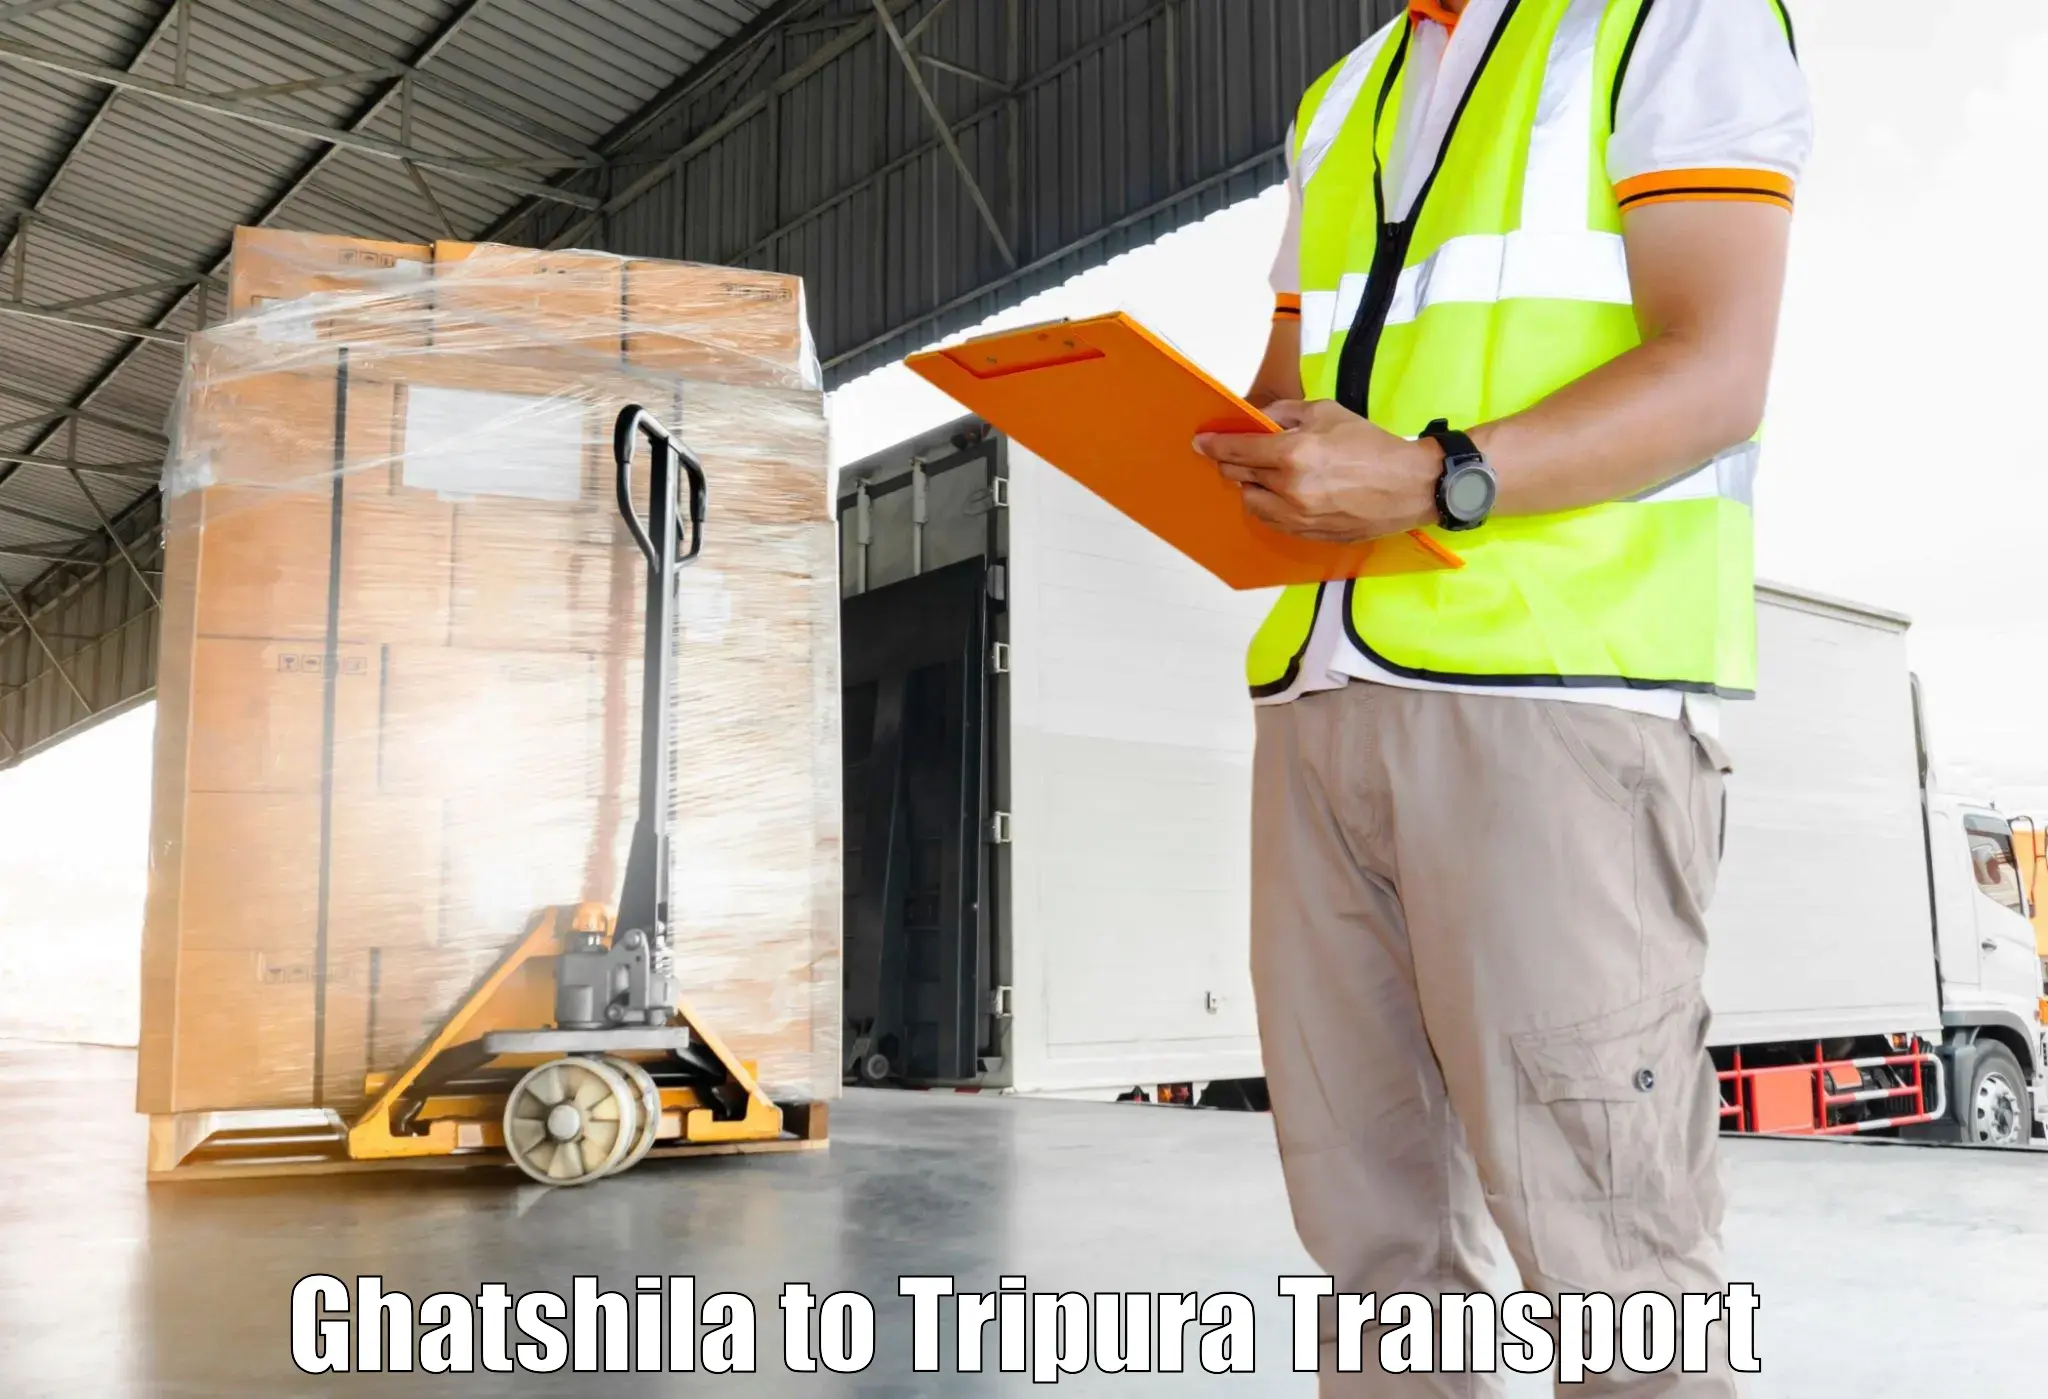 Online transport service Ghatshila to Manughat